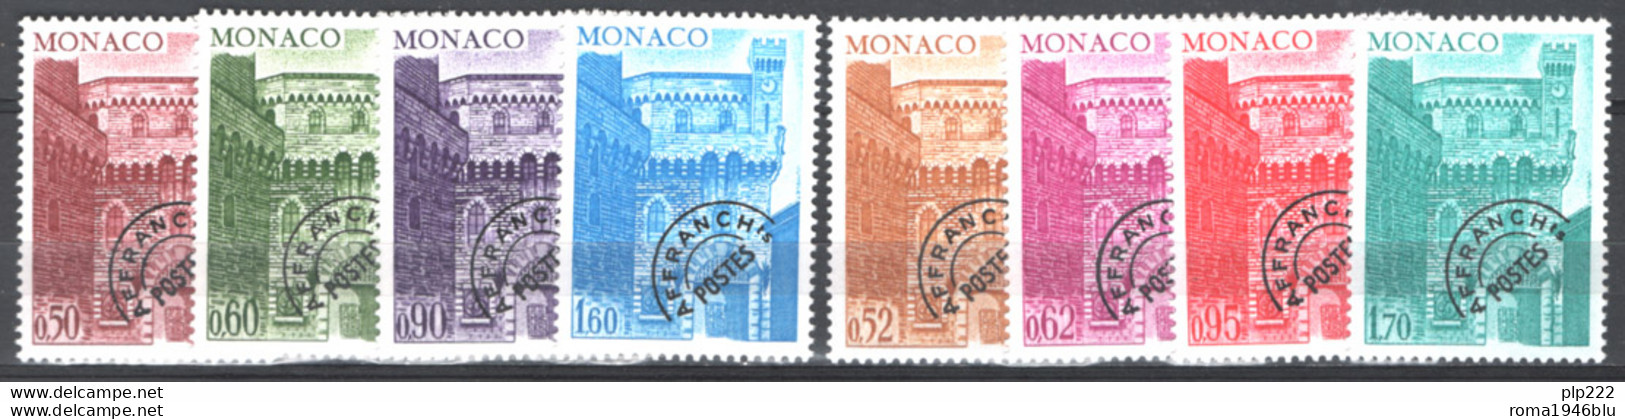 Monaco 1976 Annata Completa Con Preann / Complete Year Set With Precancel **/MNH VF - Komplette Jahrgänge